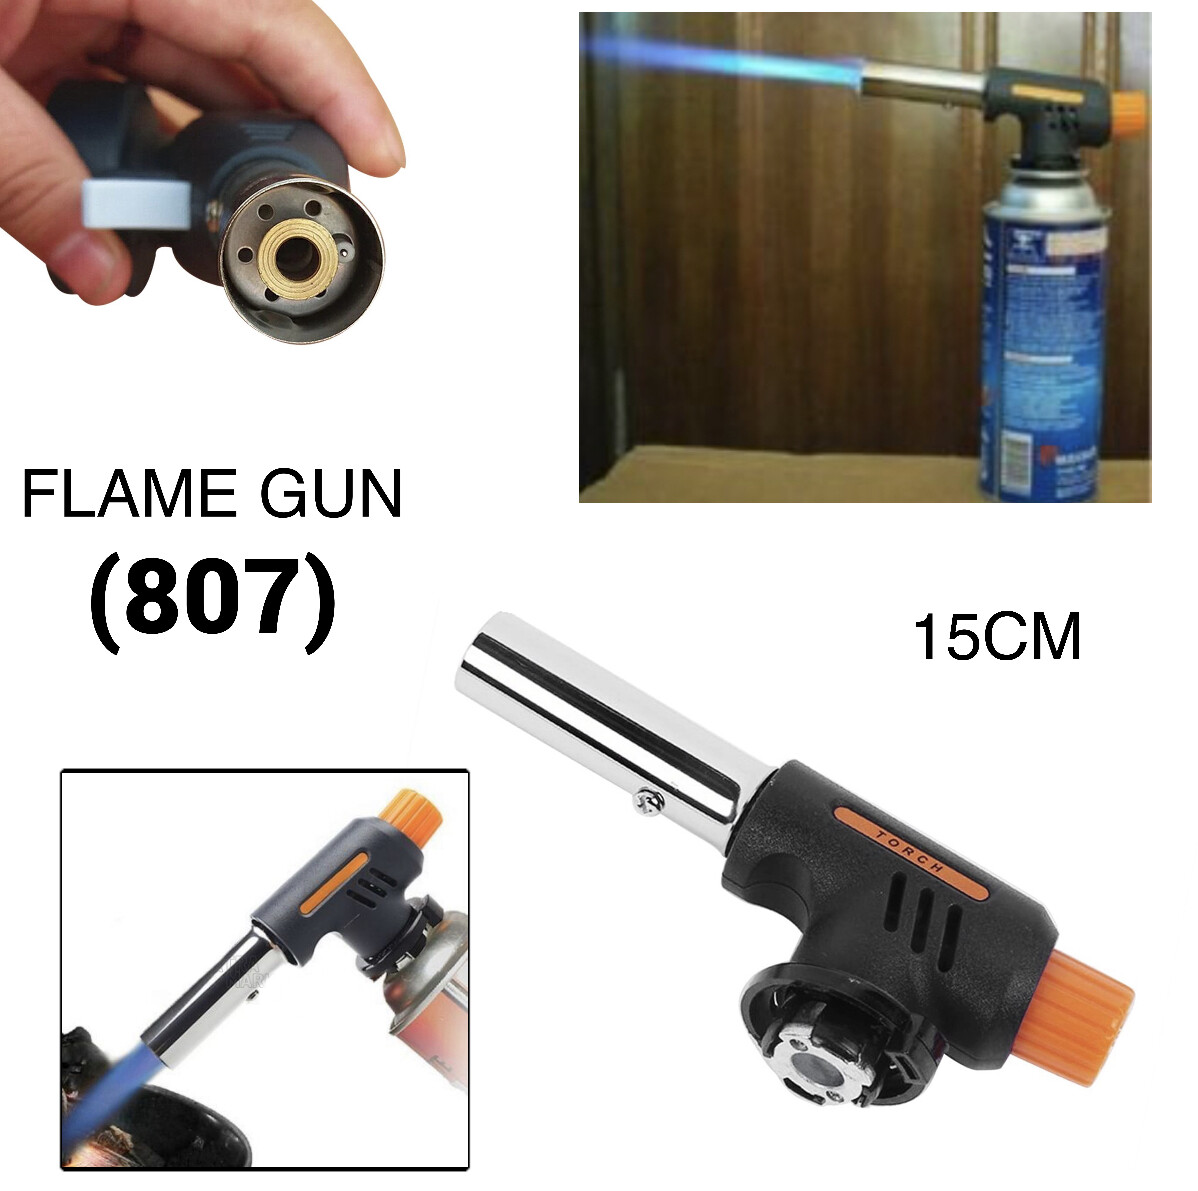 Flame Gun (807)